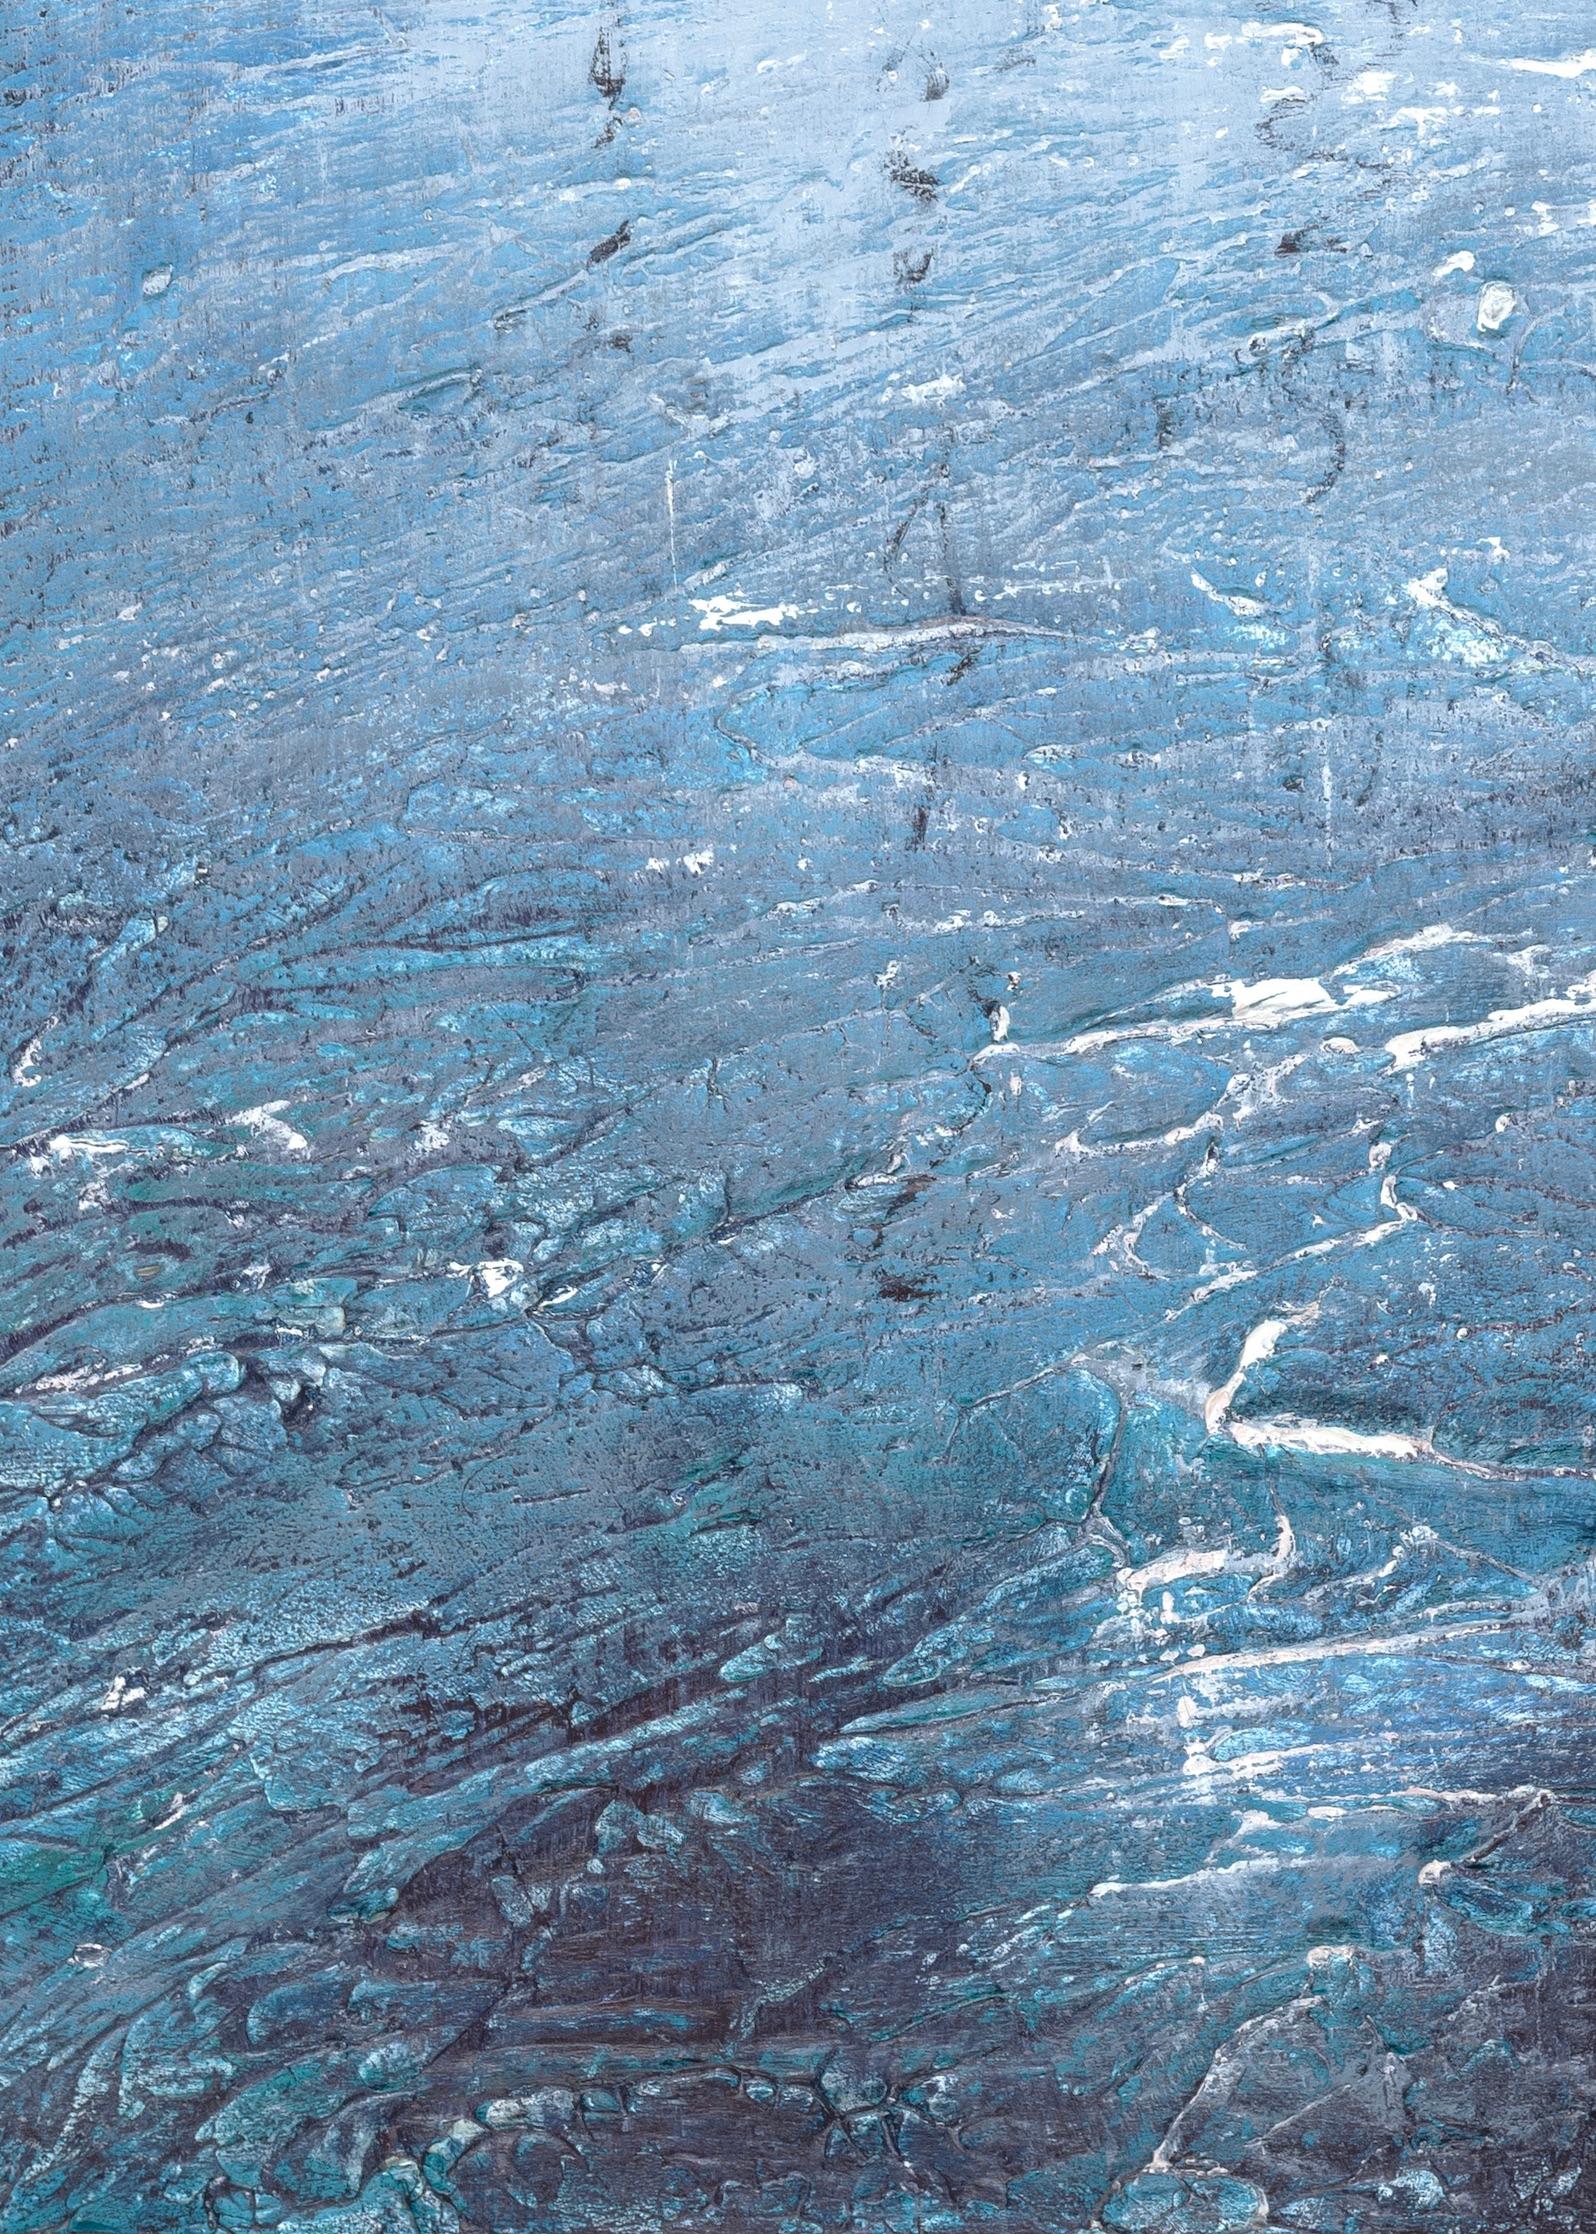 Alison Groom
Ondulations du port.
Peinture originale de paysage texturé. Huile sur support acrylique texturé sur panneau.
Taille totale de l'œuvre : H 59cm x L 83cm x D2cm. 
Vendu sans cadre.

Harbour Ripples est une peinture très texturée inspirée